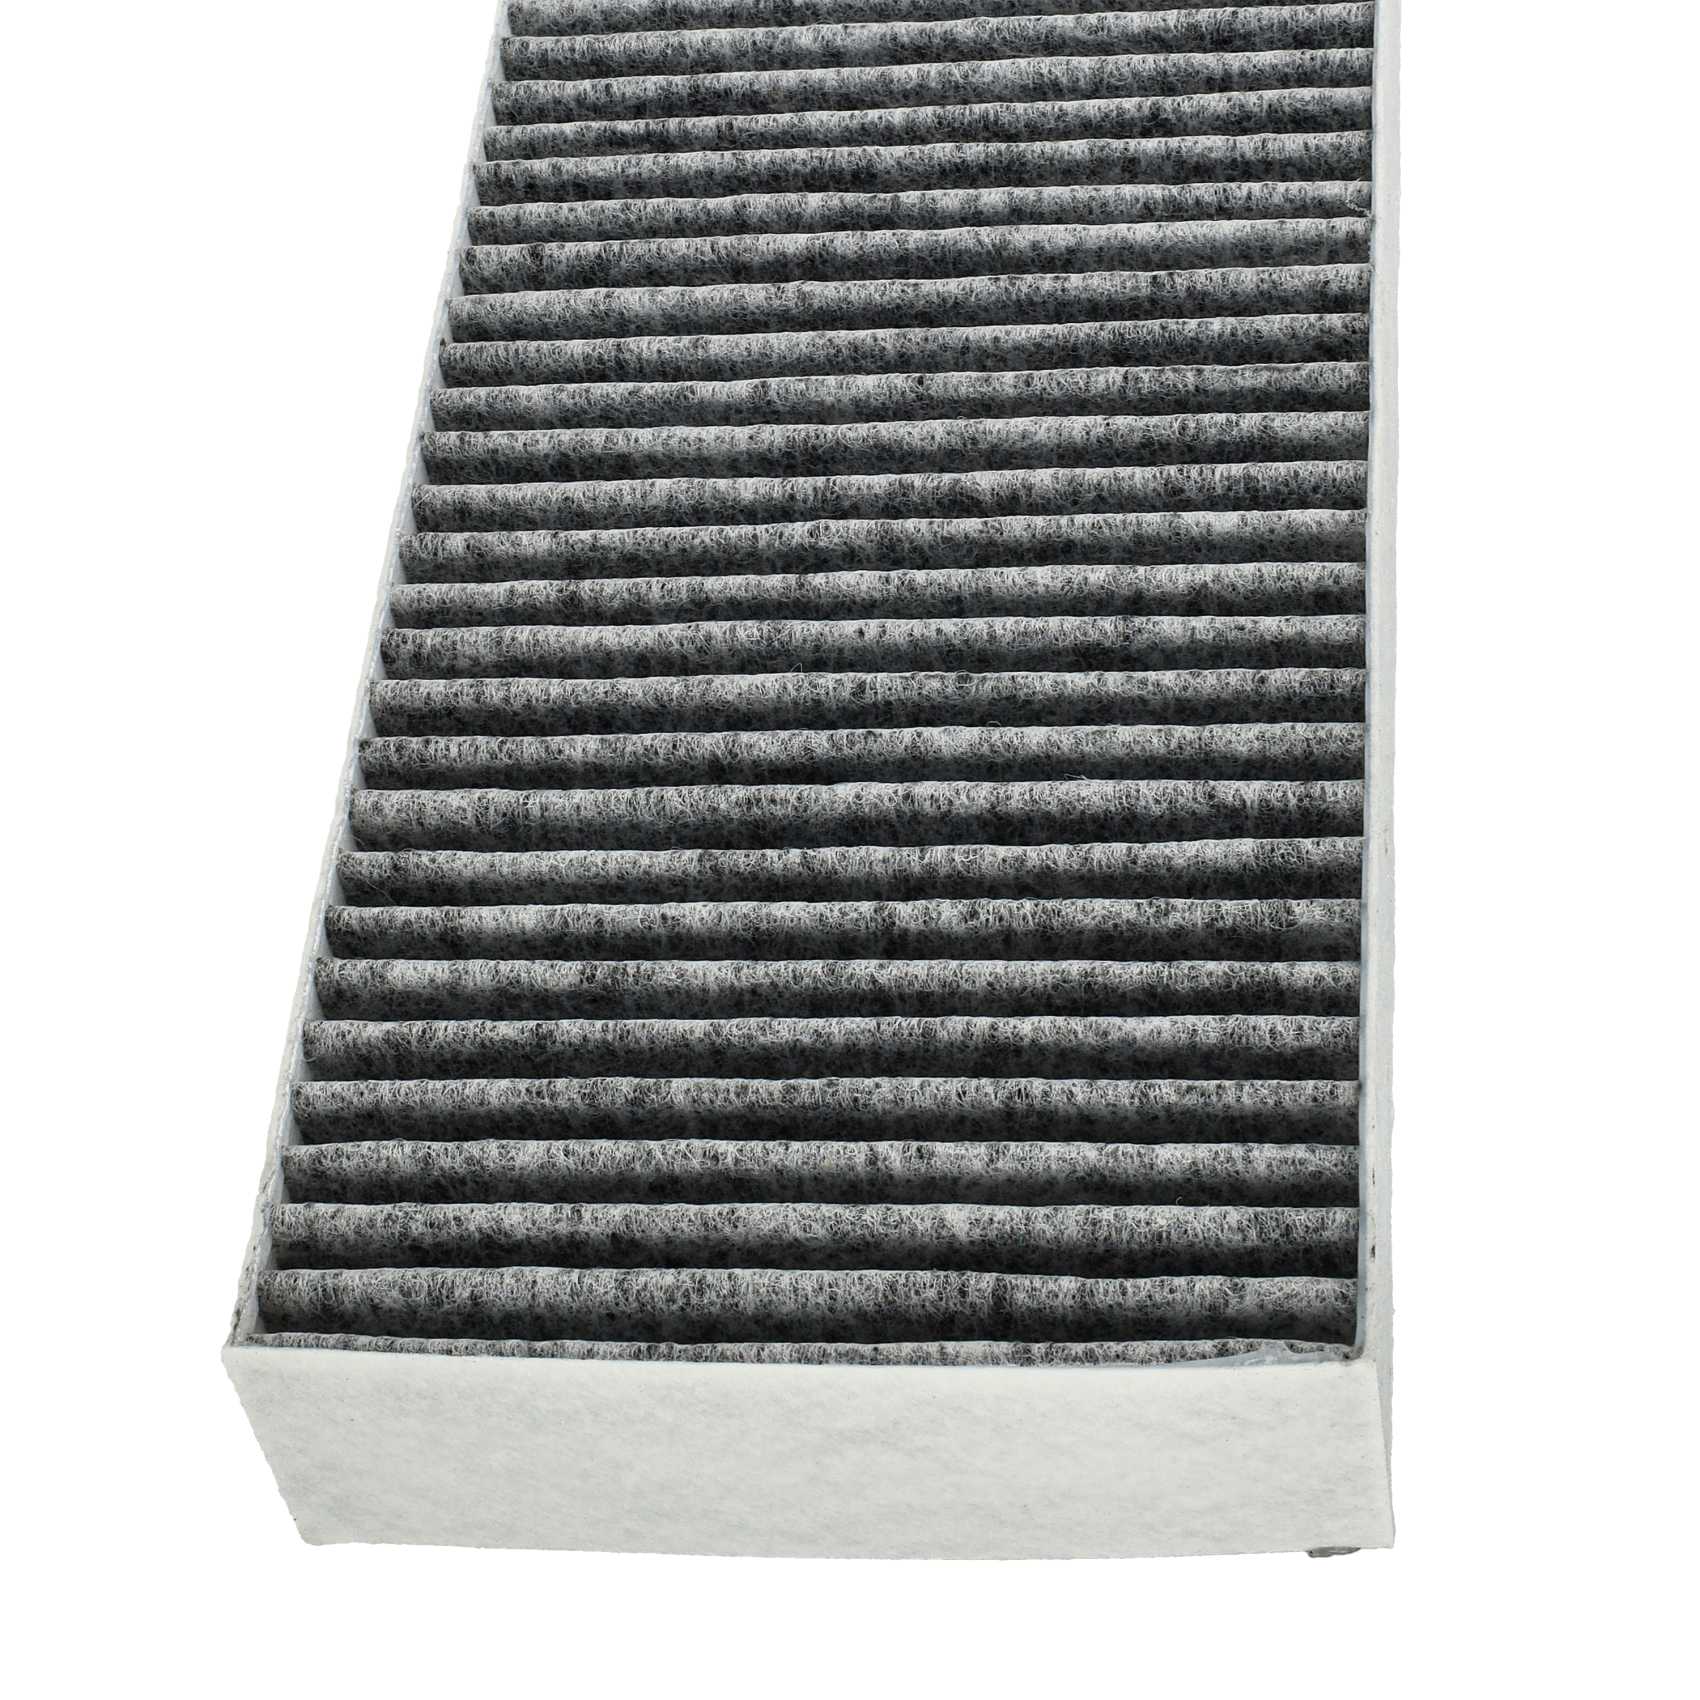 2x Filtr węglowy do okapu Bora zamiennik Bora BAKFS, BAKFS-002 - 34 x 12,2 x 4,25 cm